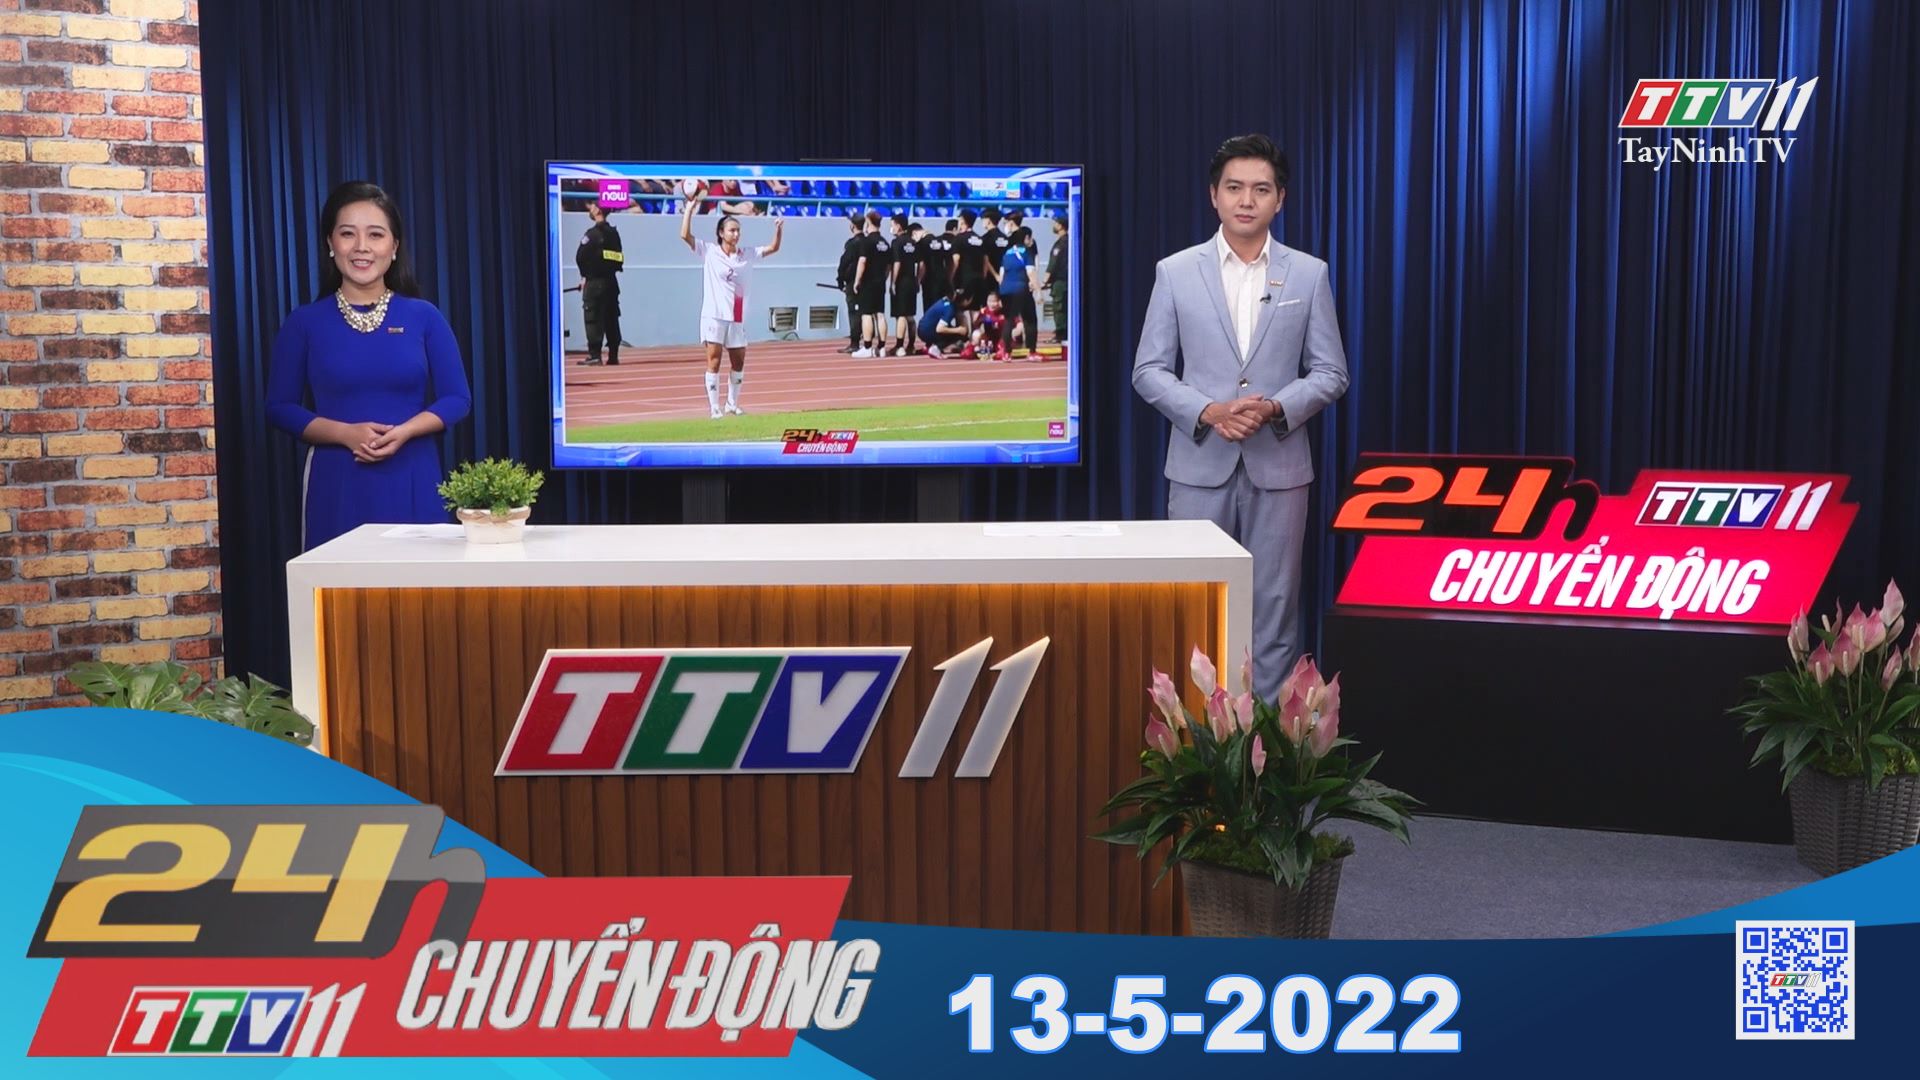 24h Chuyển động 13-5-2022 | Tin tức hôm nay | TayNinhTV